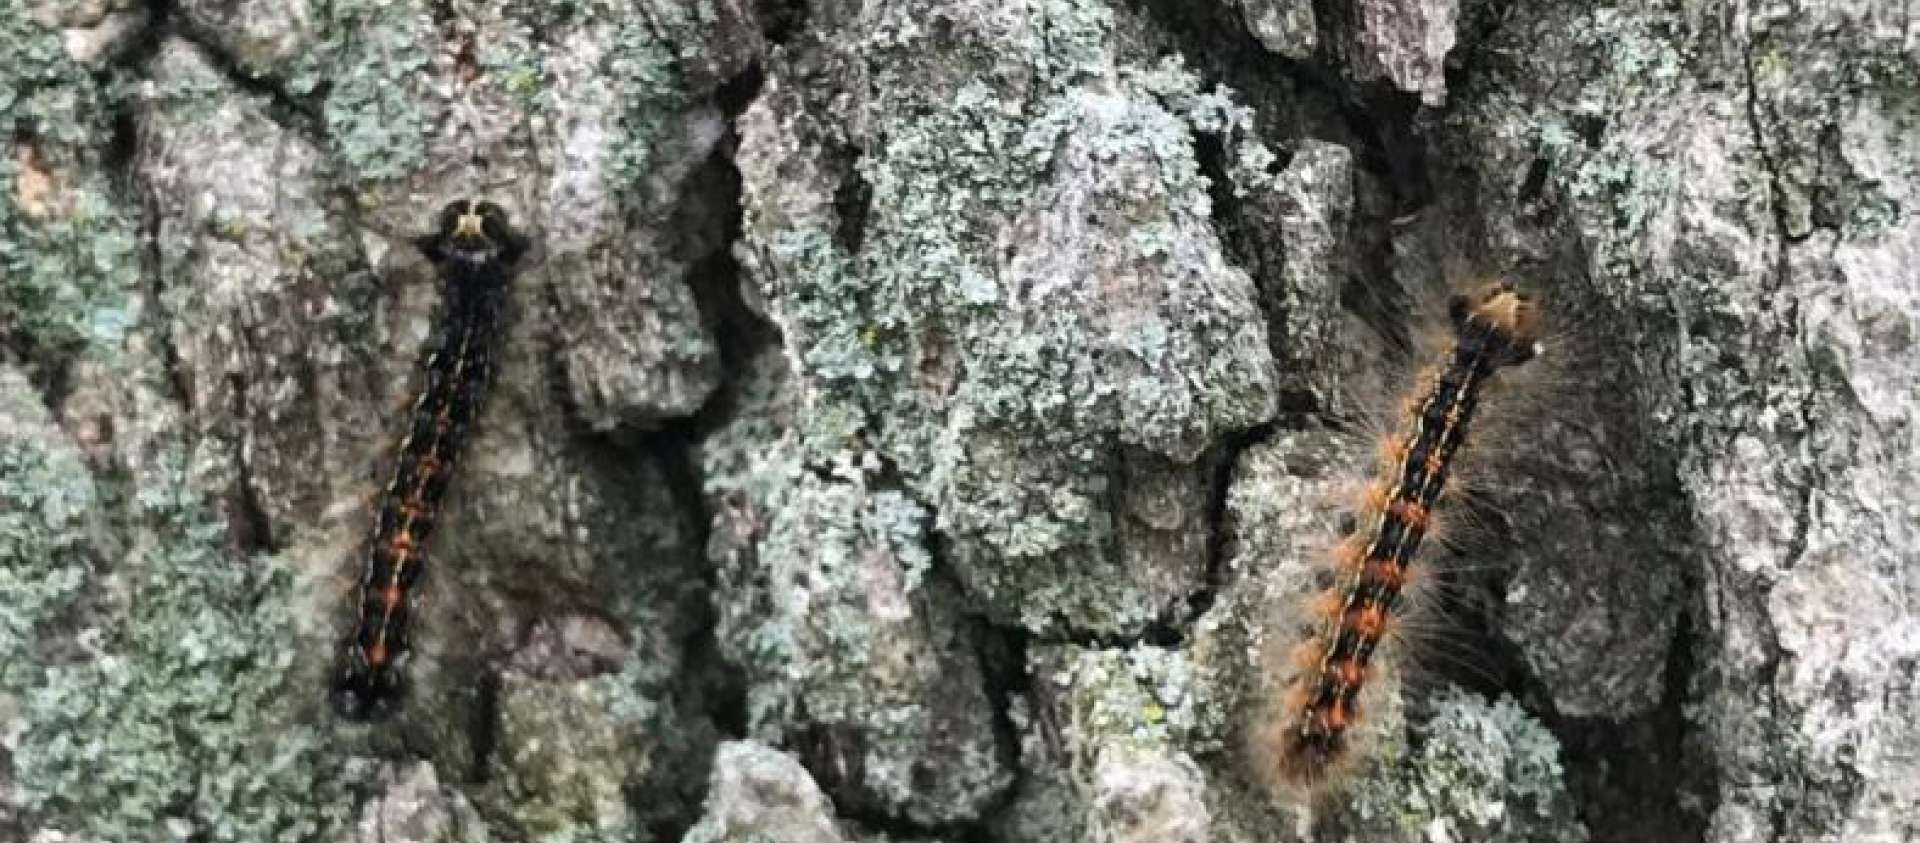 European Gypsy Moth Caterpillars on Tree 